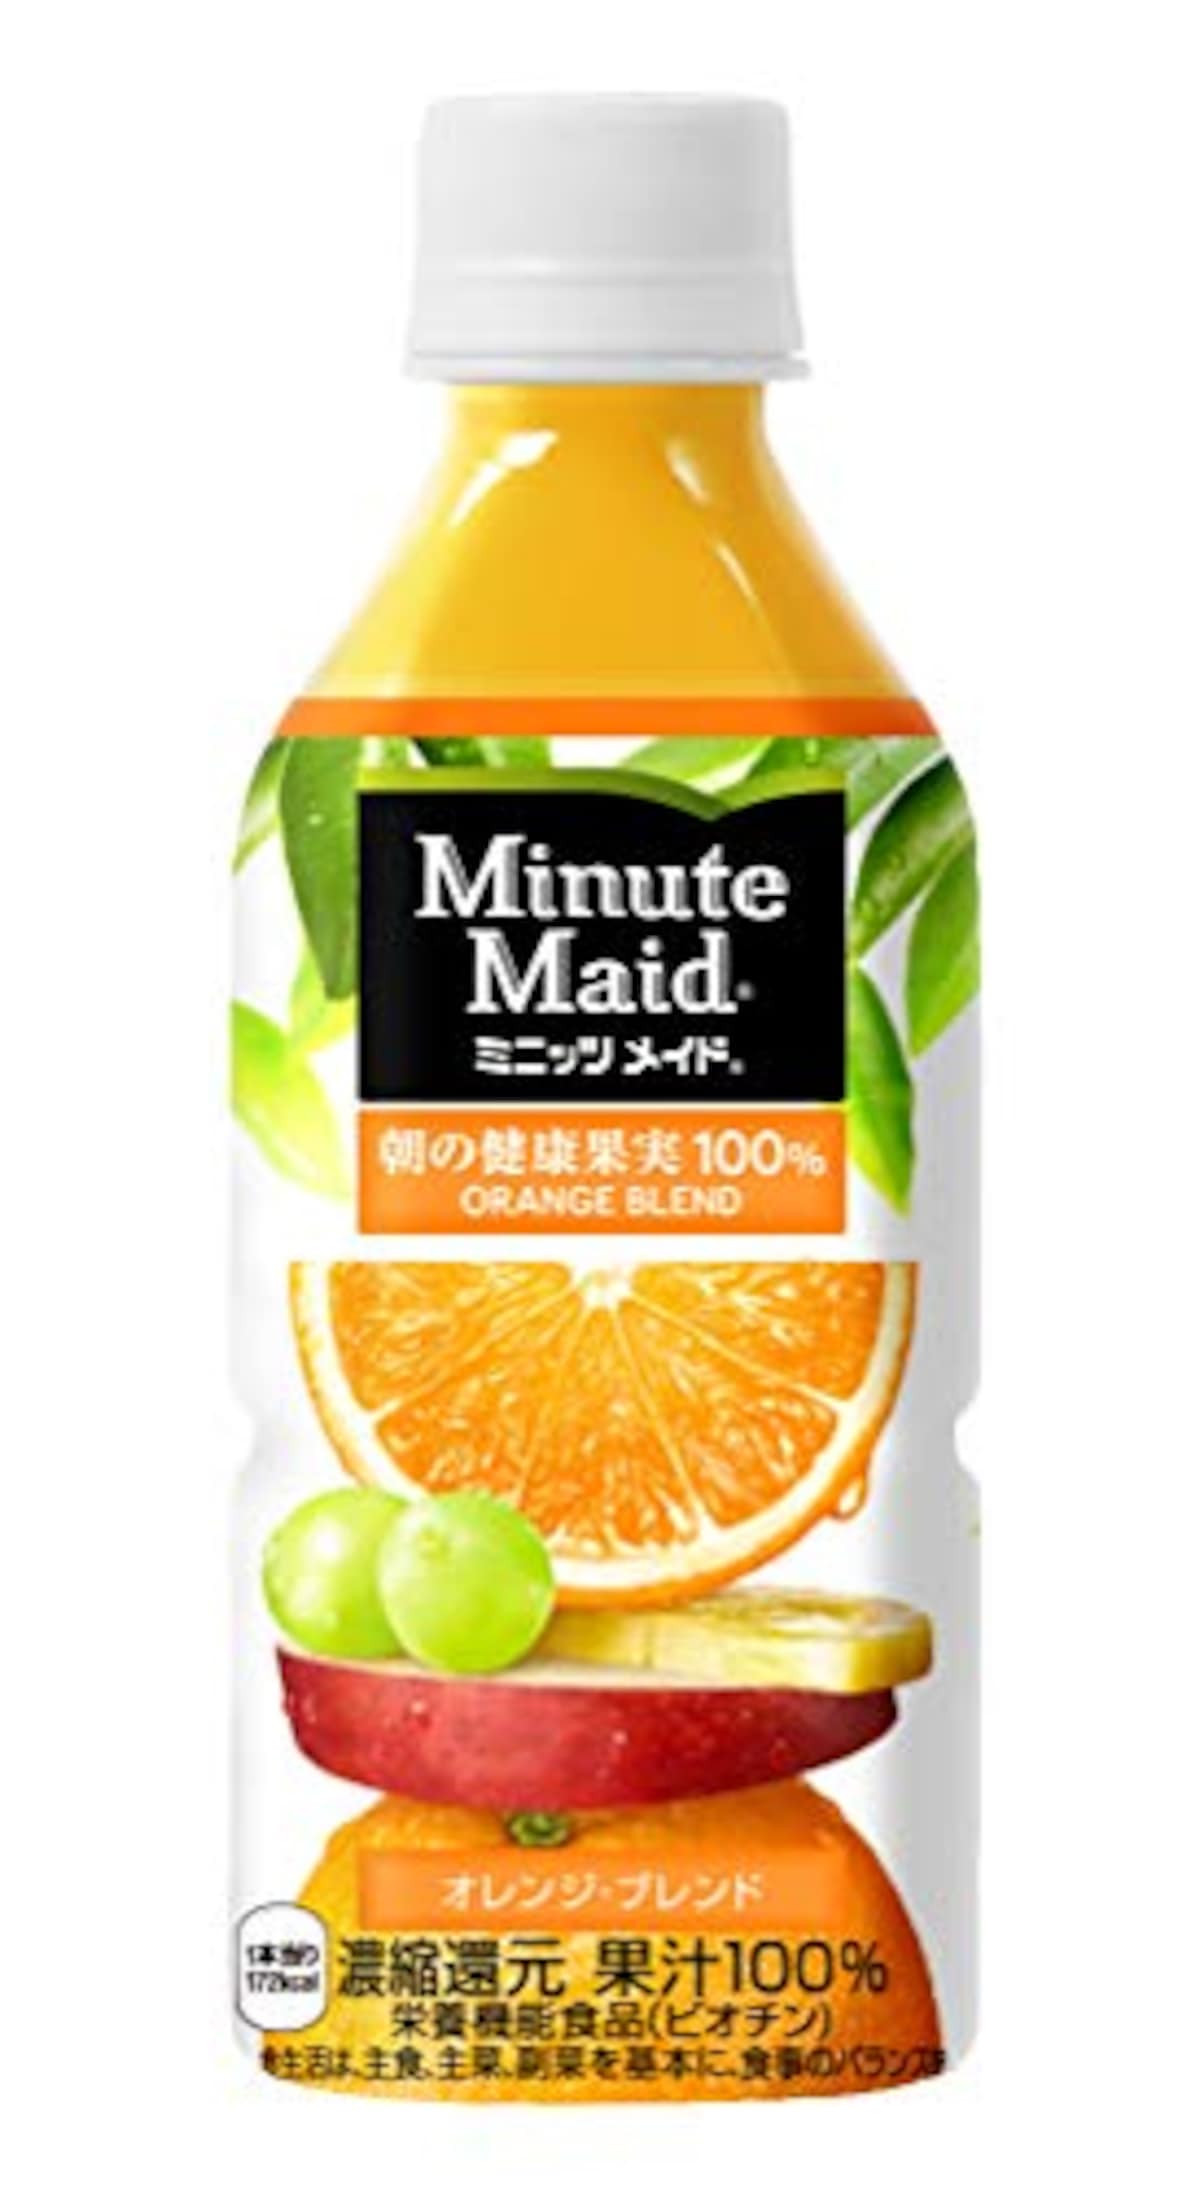 ミニッツメイド 朝の健康果実オレンジブレンド